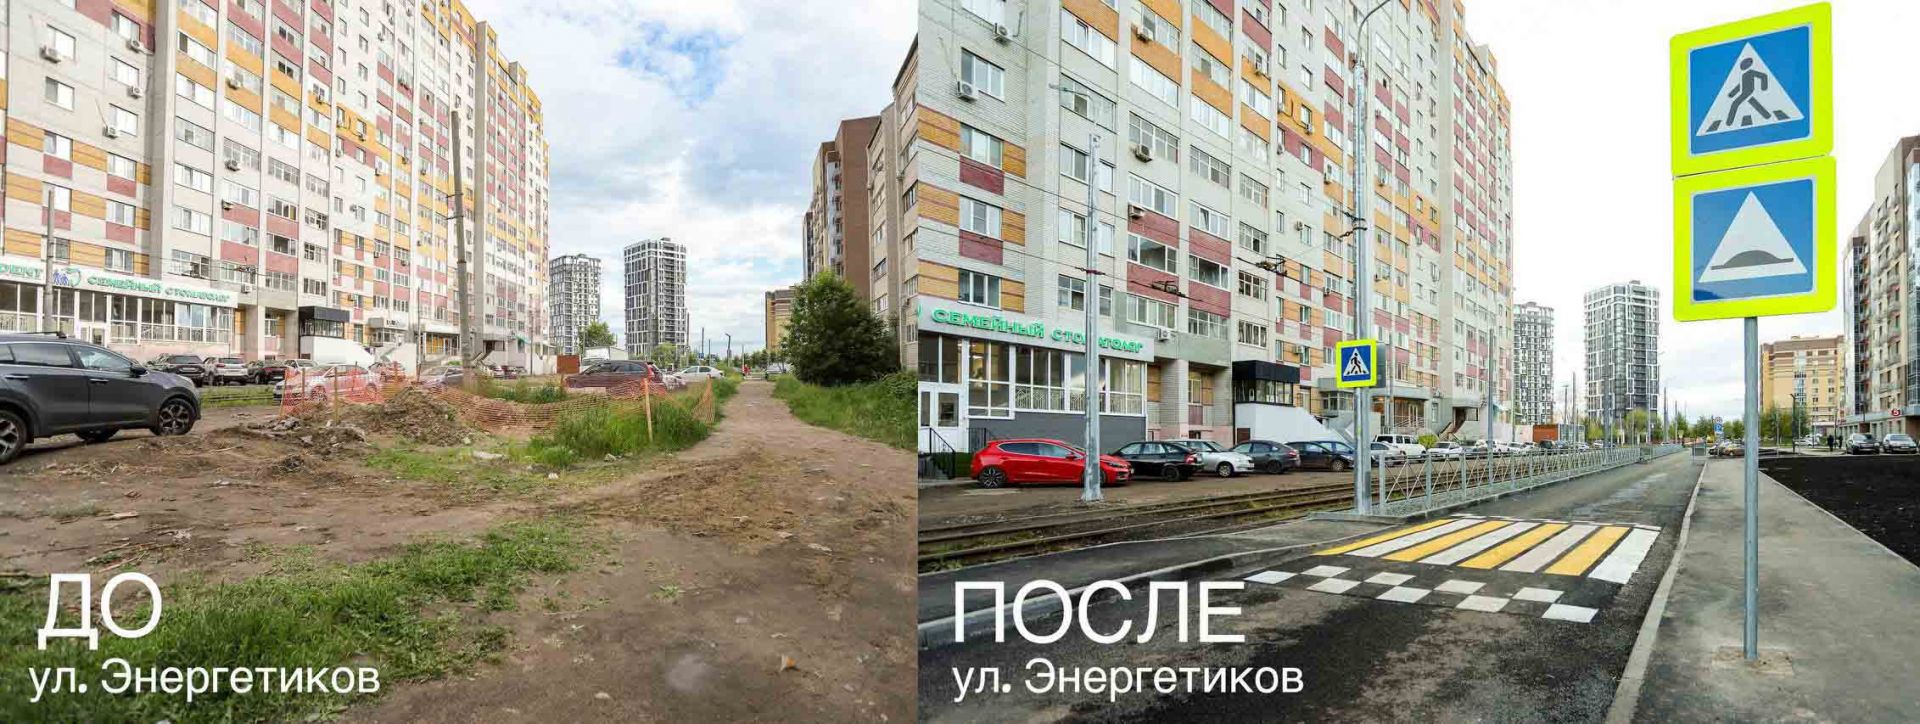 В Казани по нацпроекту отремонтировали участок улицы Энергетиков